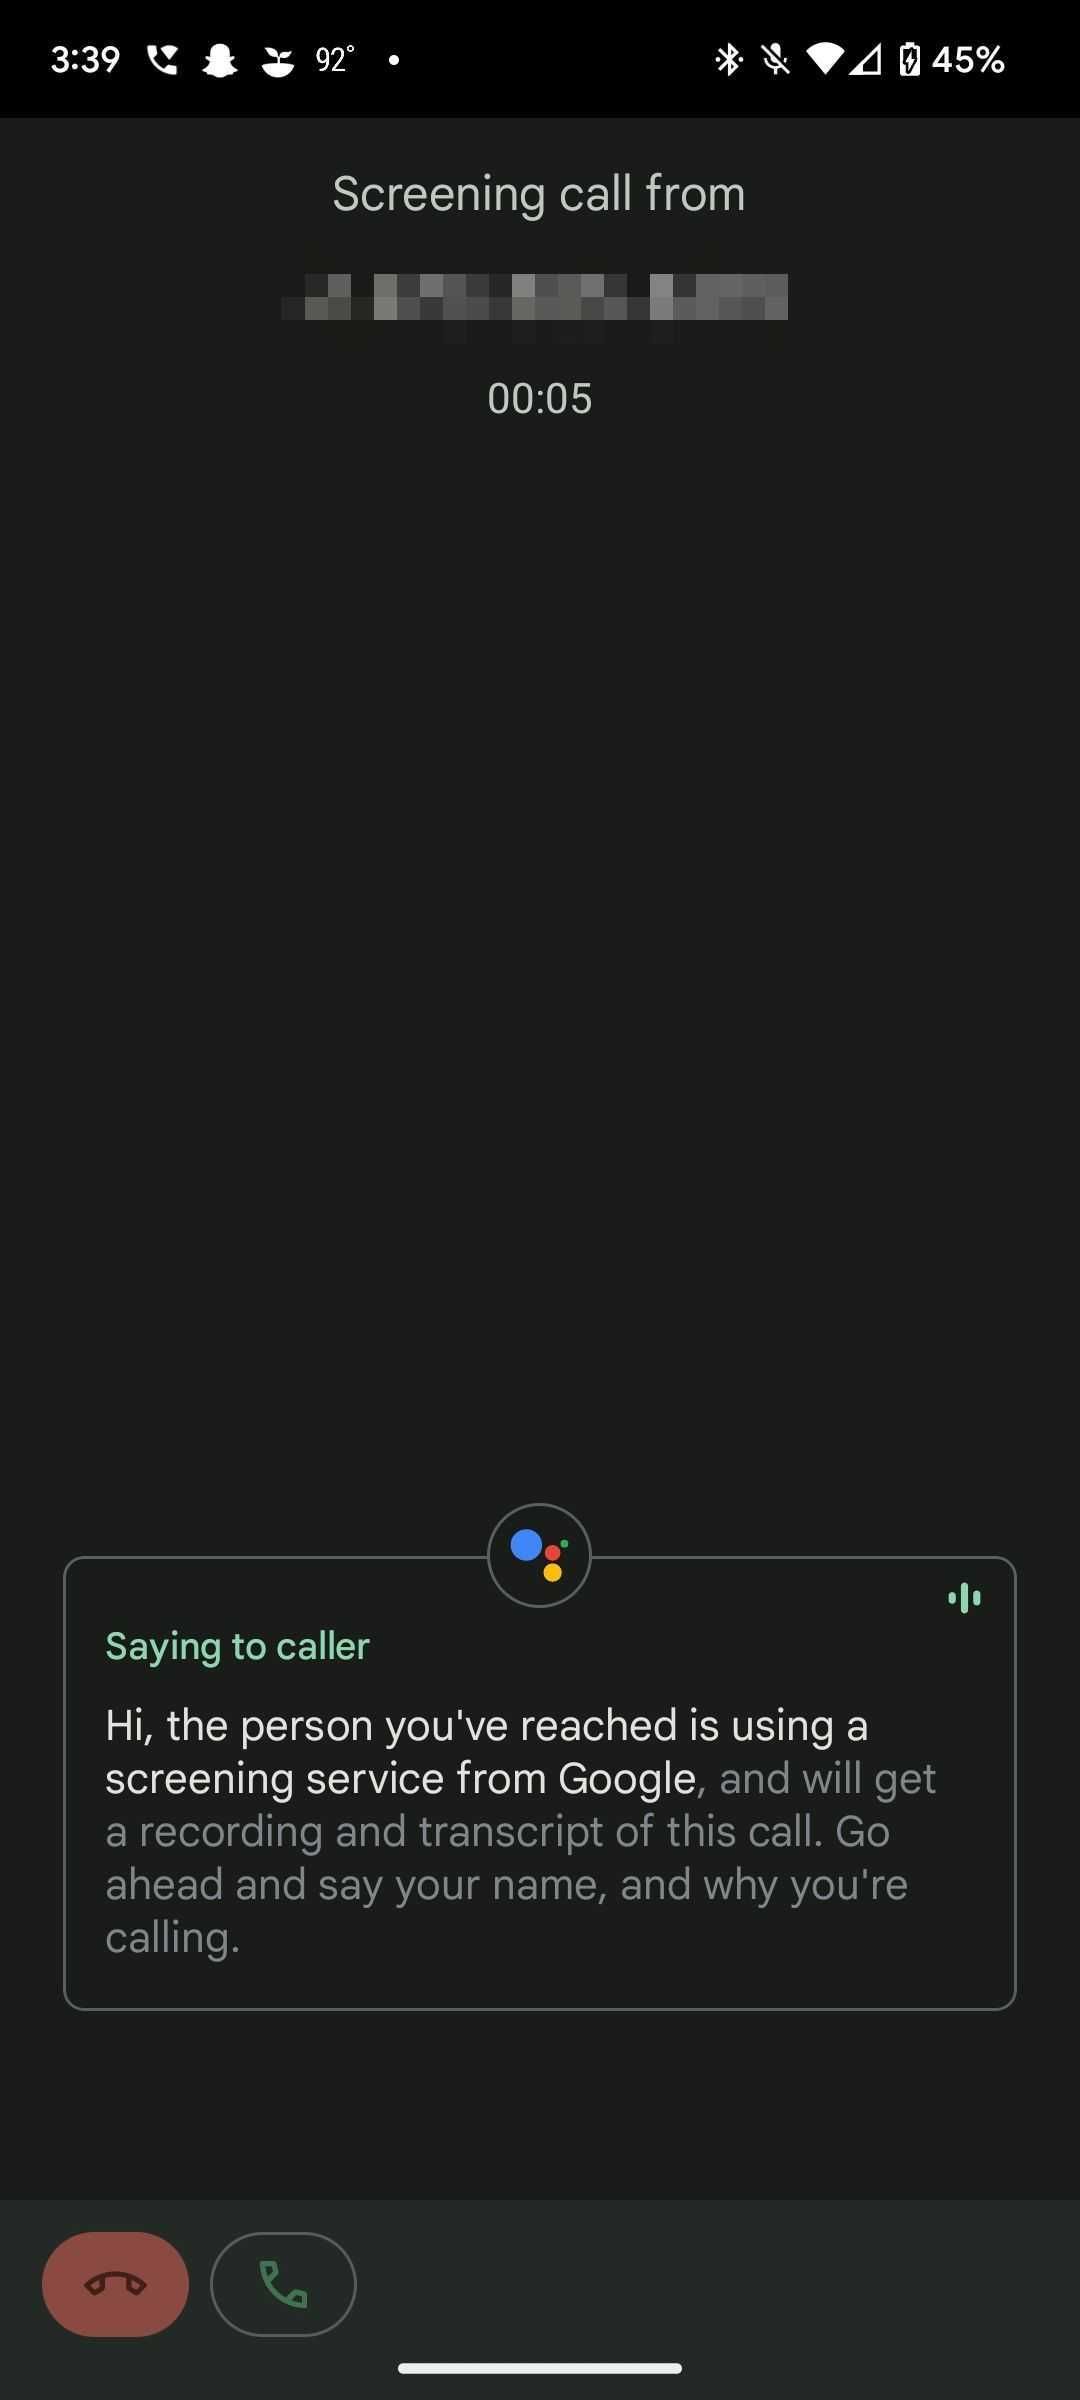 Google Pixel Call Screening transcribing an ongoing conversation